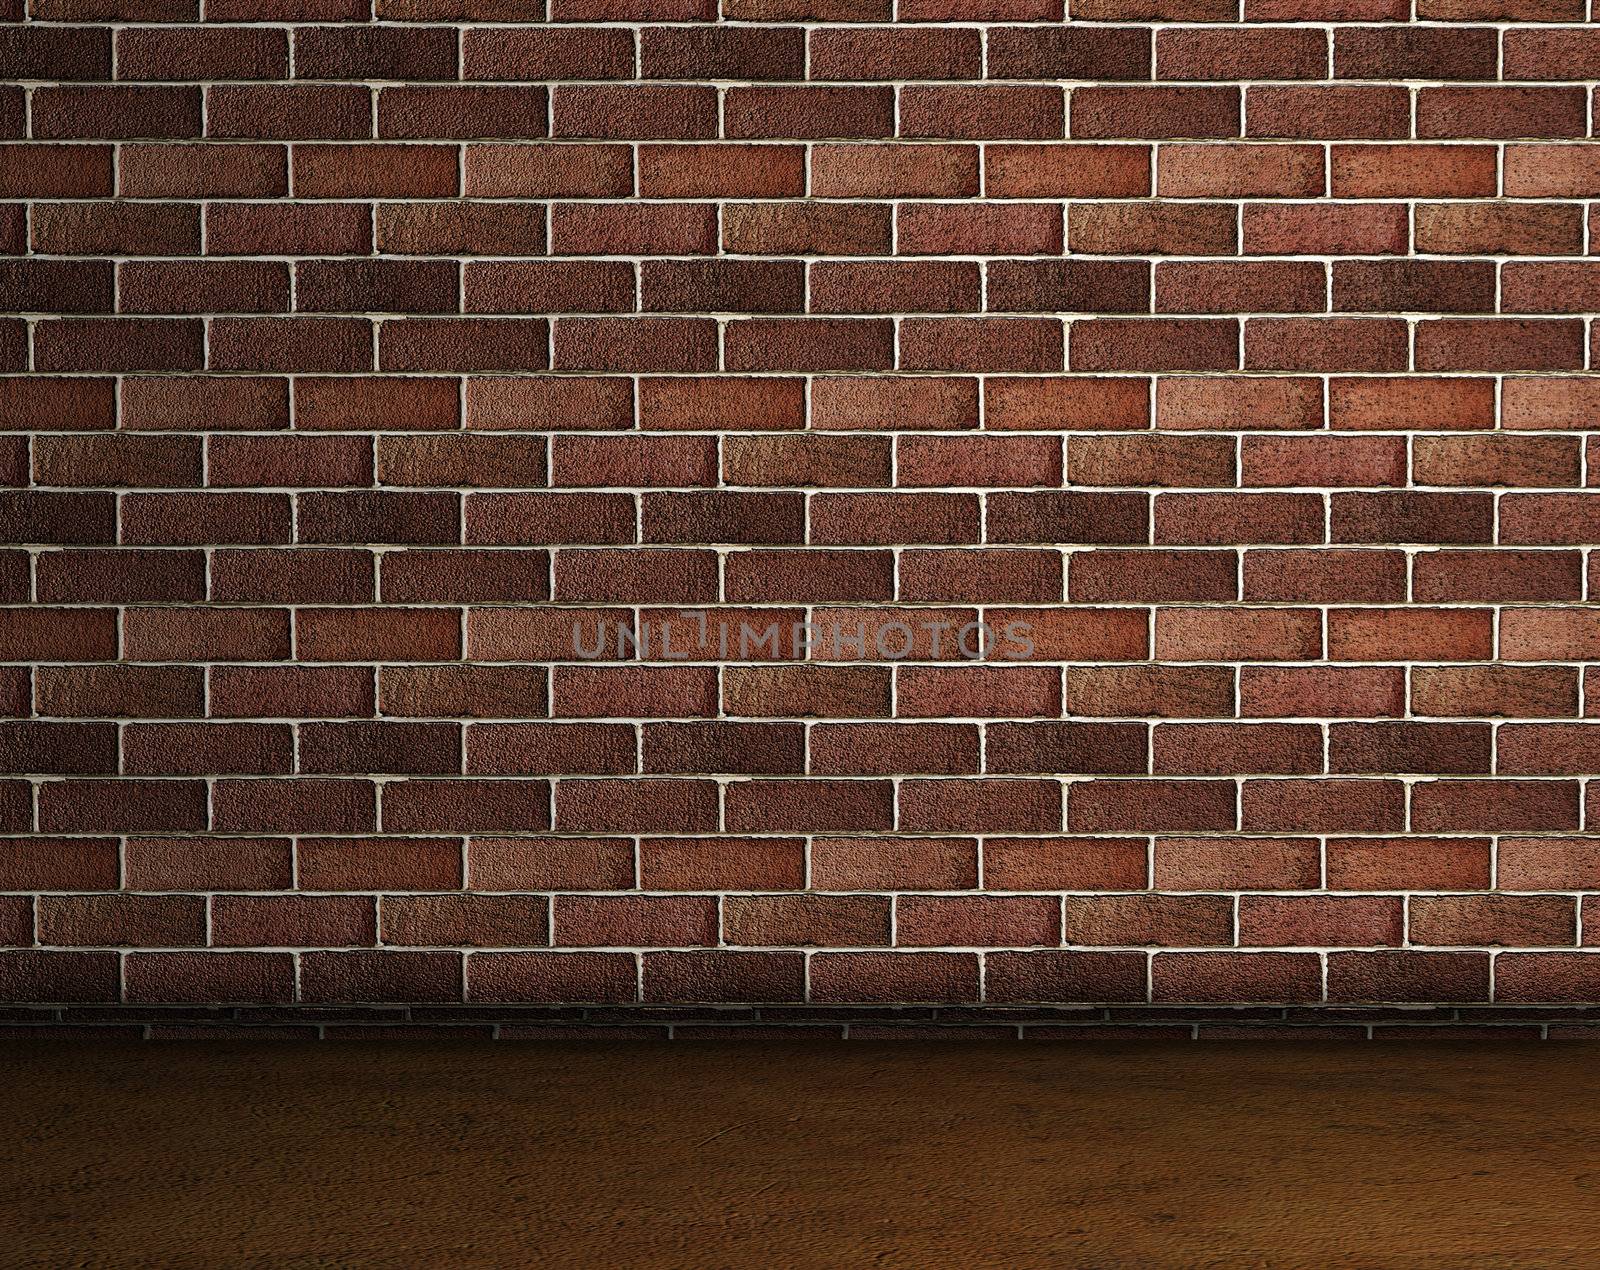 frontal image of brick wall